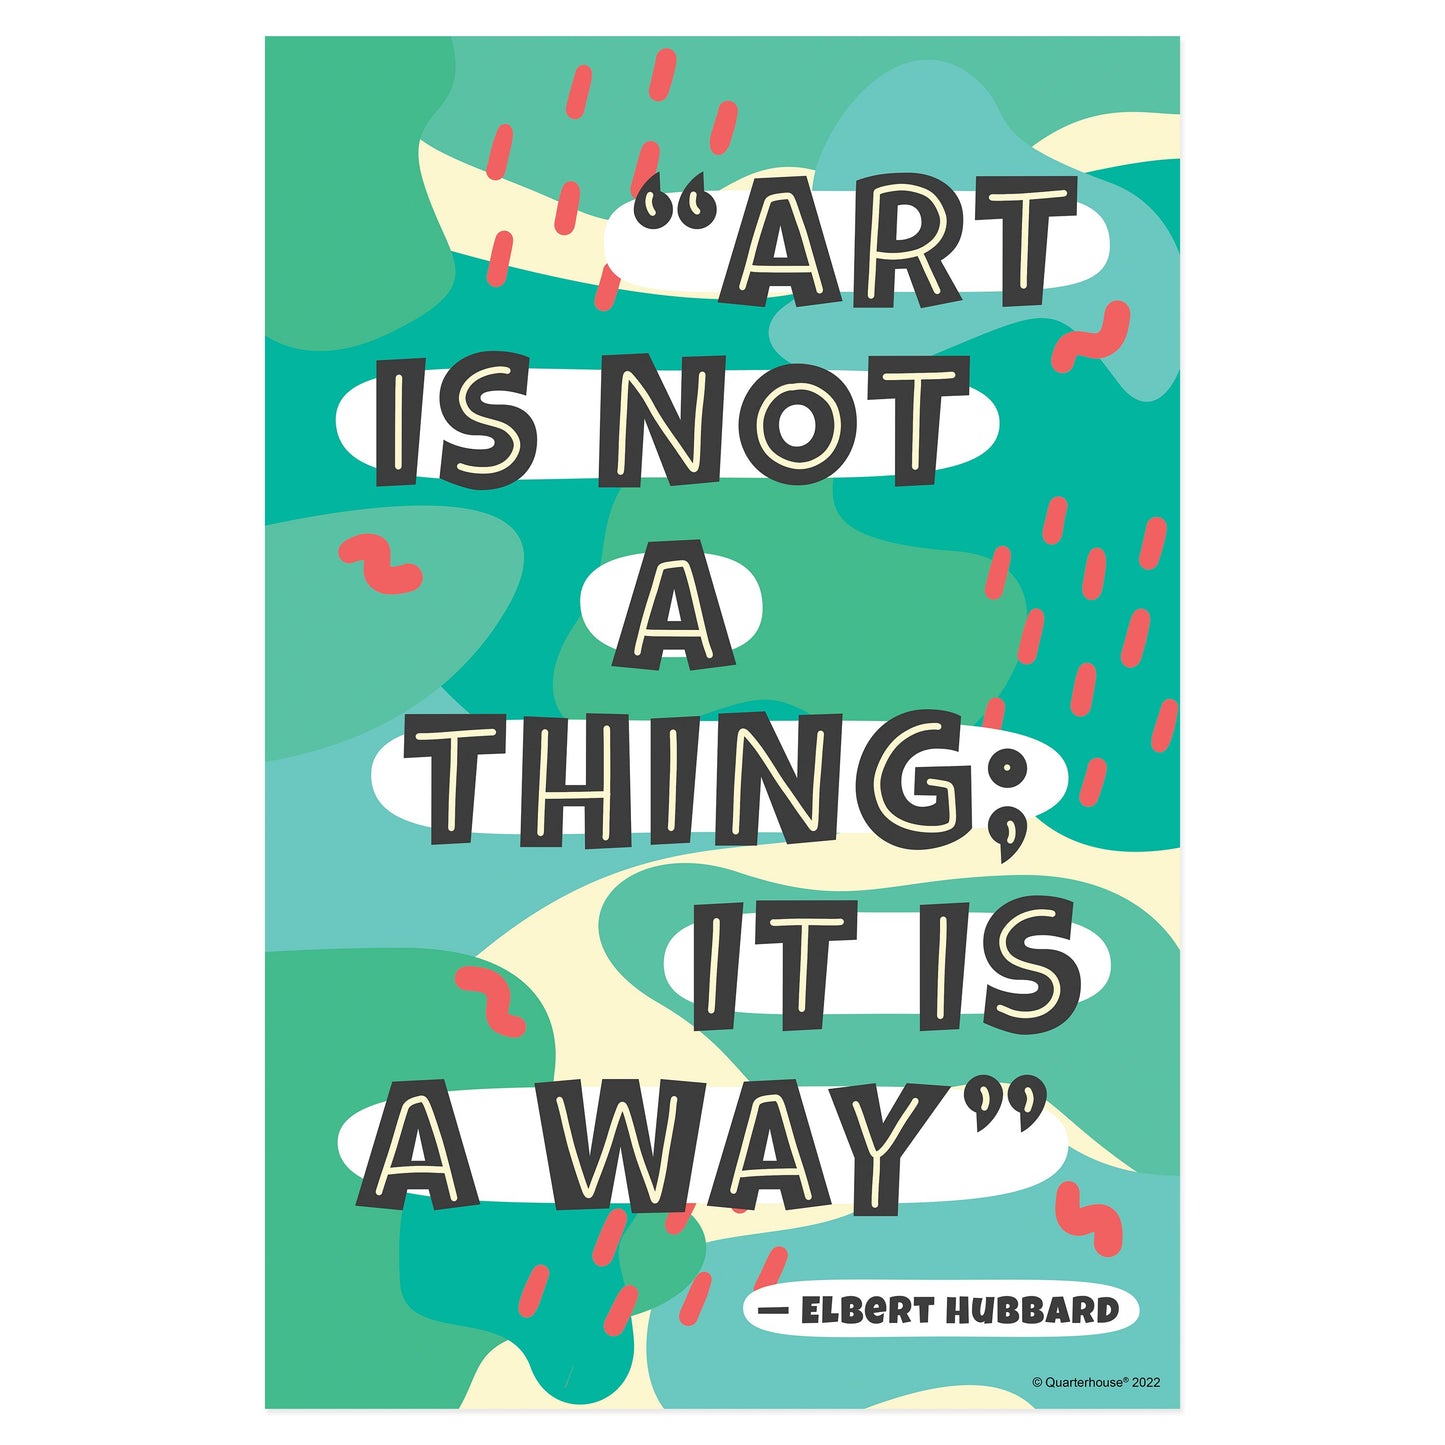 Quarterhouse Artist Quotables - Elbert Hubbard Motivational Poster, Art Classroom Materials for Teachers